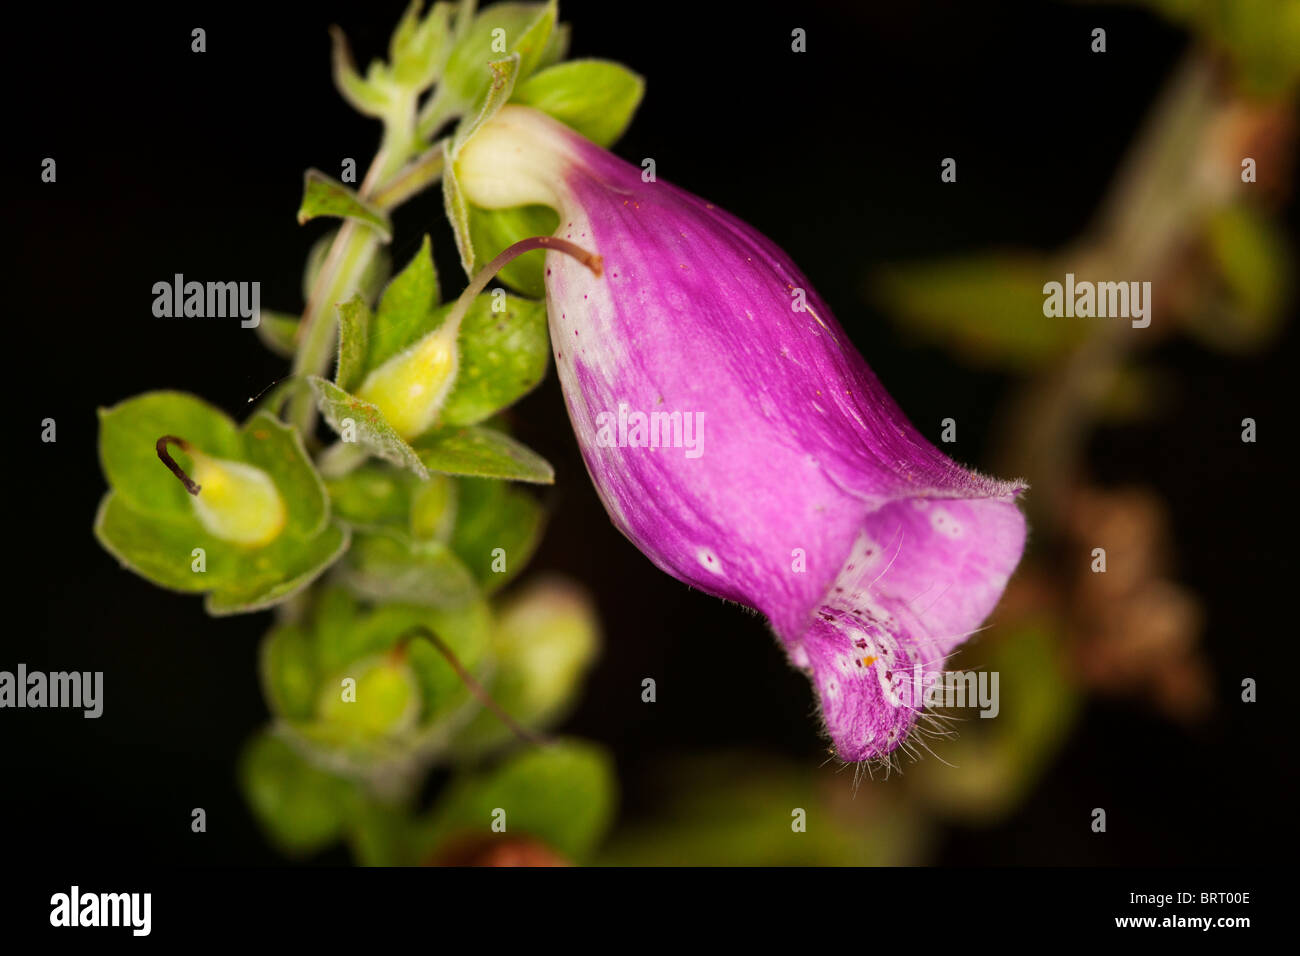 Closeup of a foxglove flower. Stock Photo